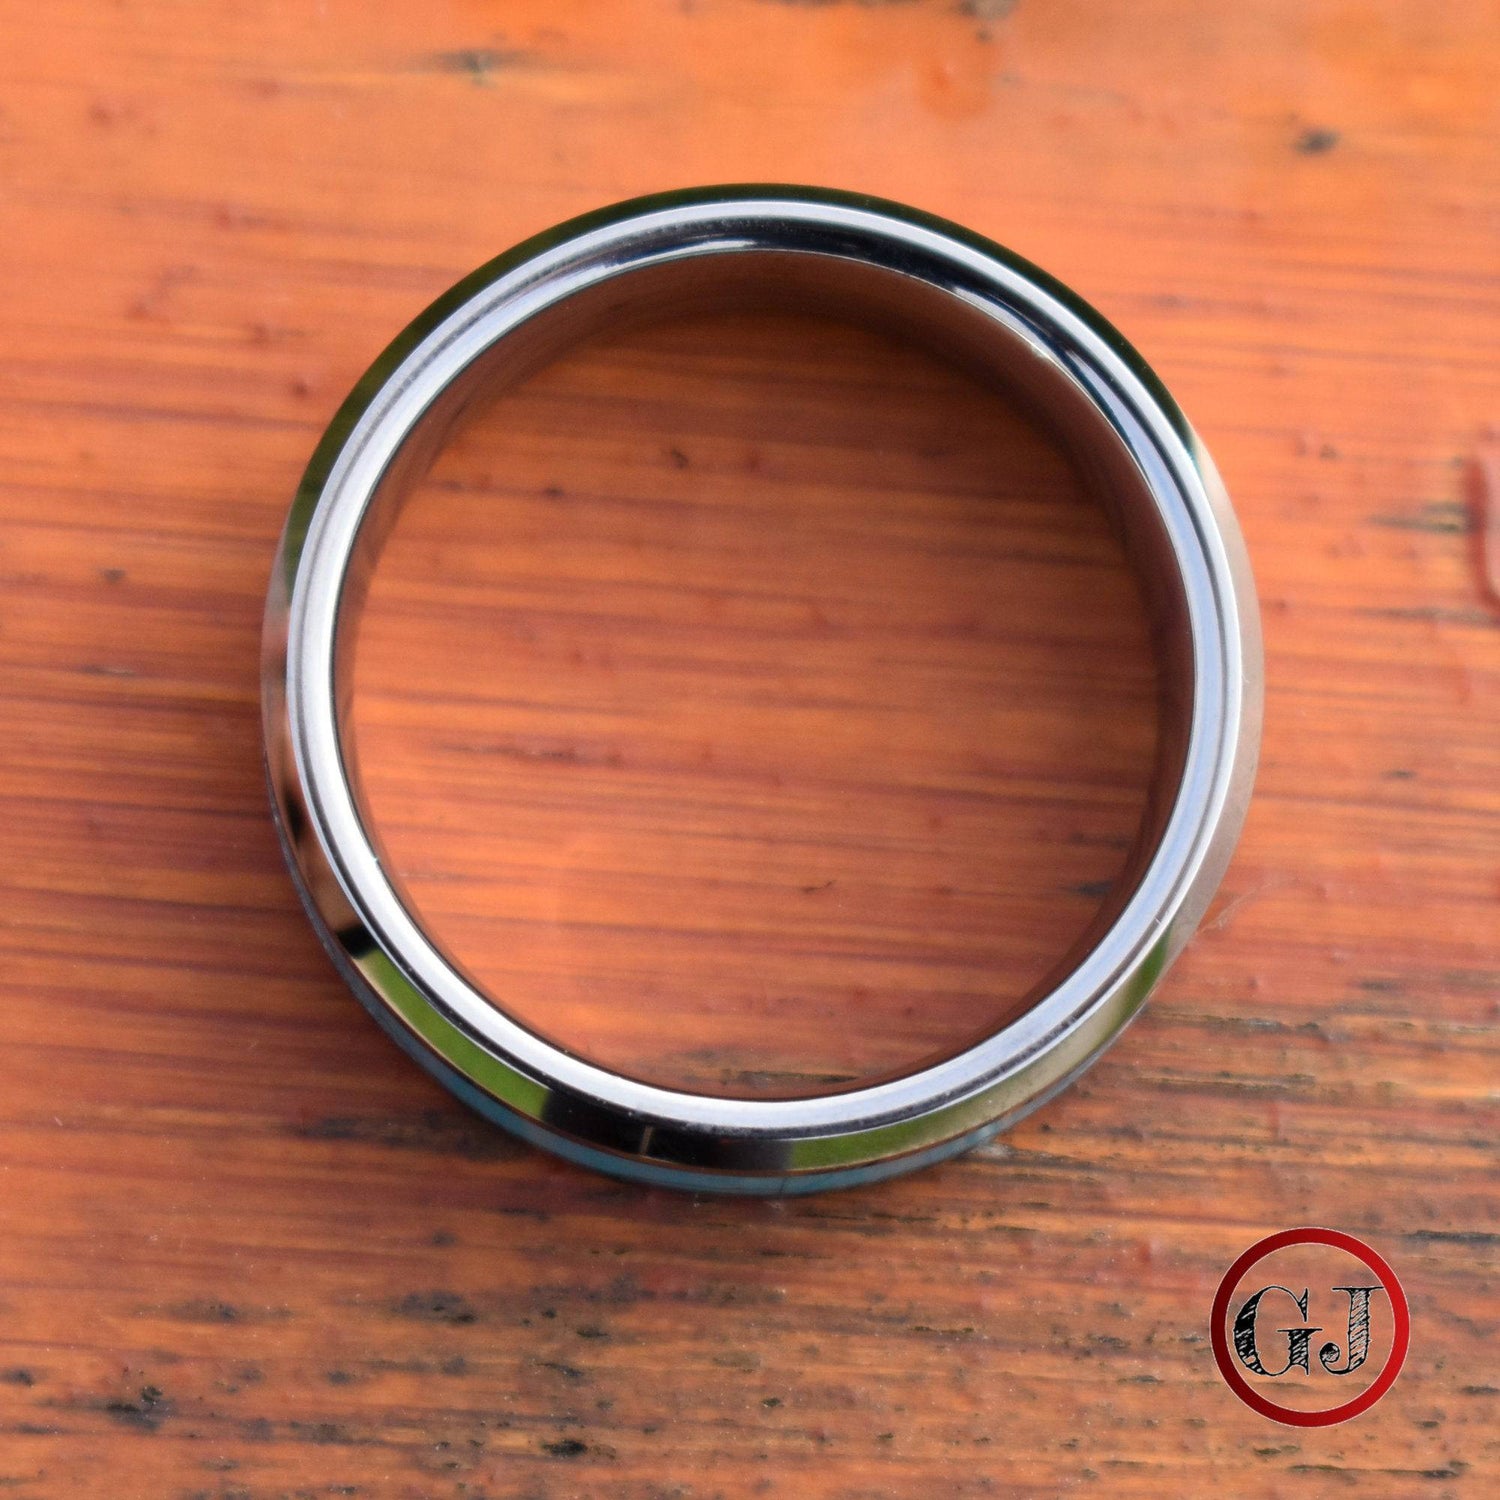 Tungsten 8mm Ring with Kallaite Stone Inlay - Tungsten Titans